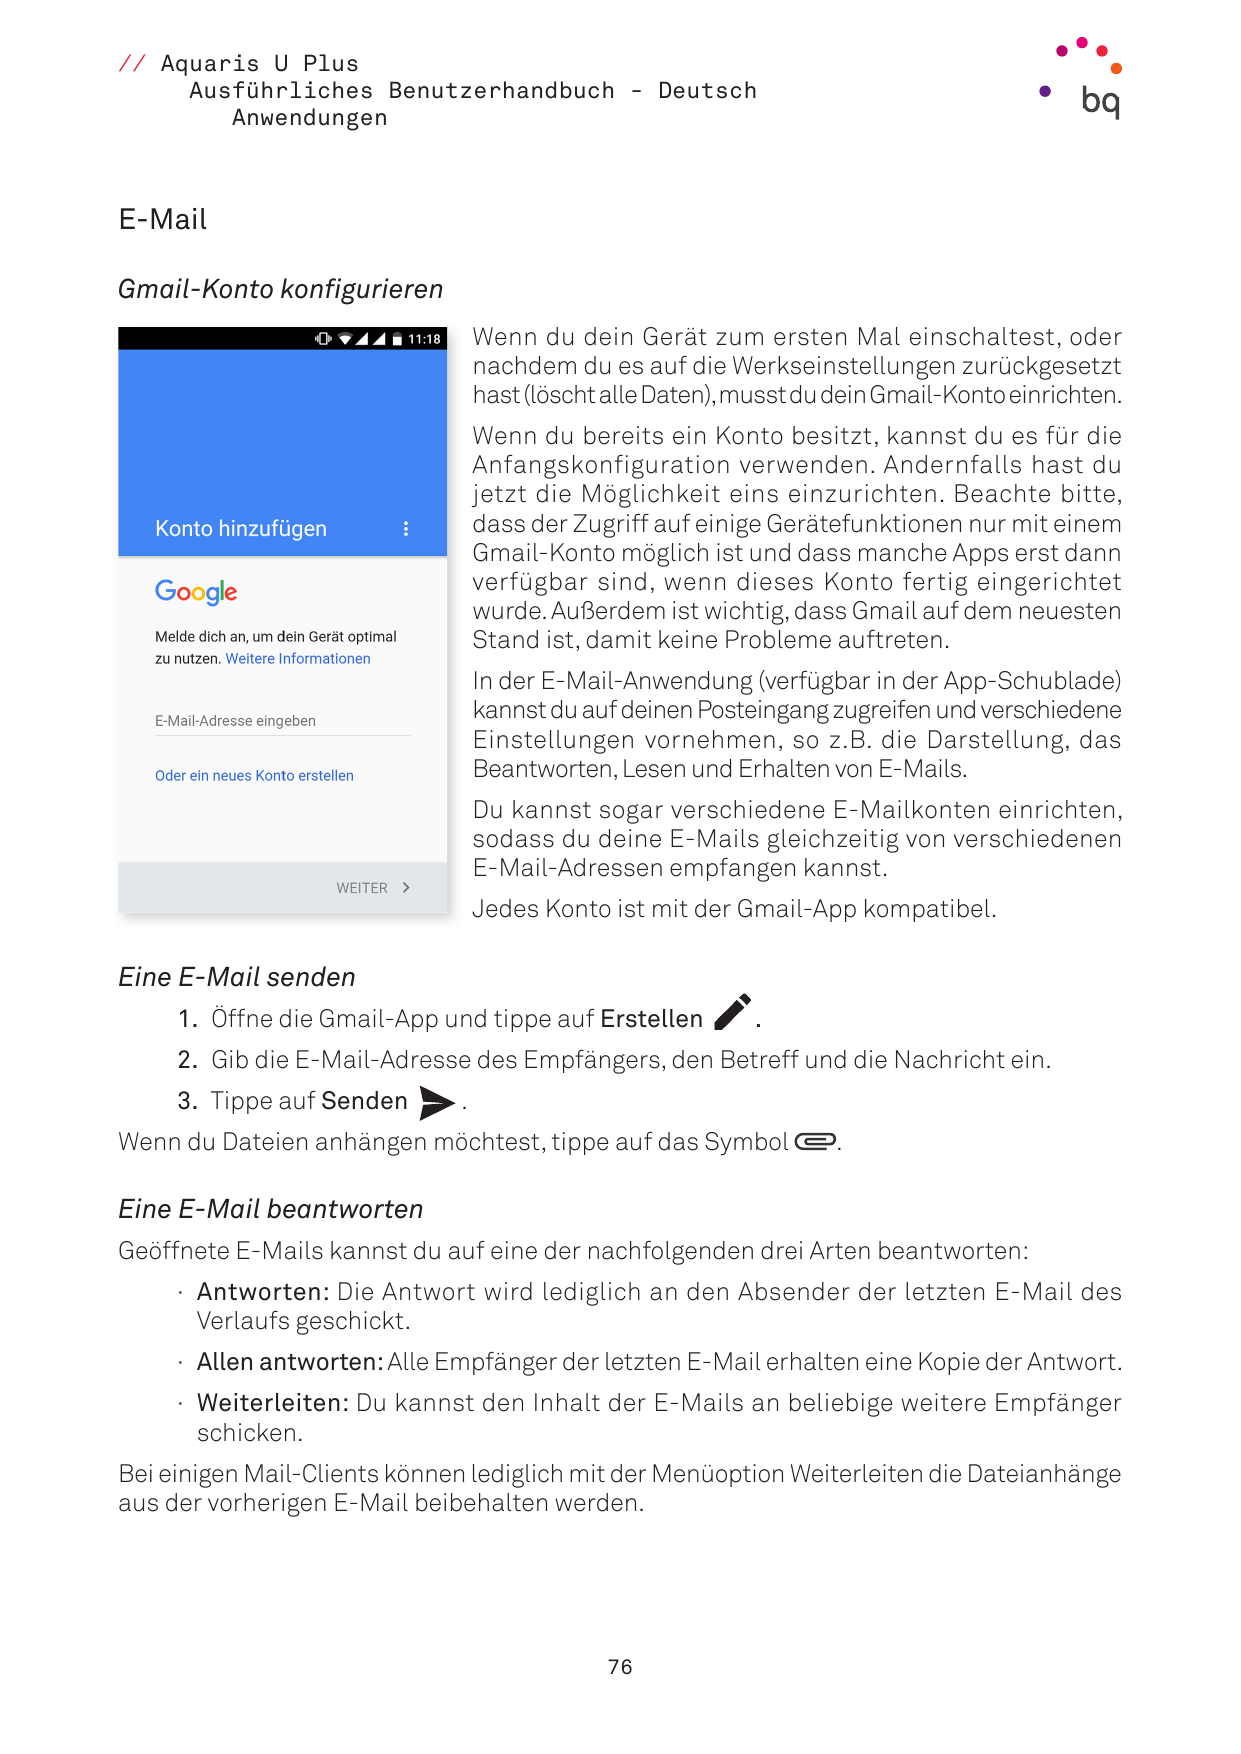 // Aquaris U PlusAusführliches Benutzerhandbuch - DeutschAnwendungenE-MailGmail-Konto konfigurierenWenn du dein Gerät zum ersten